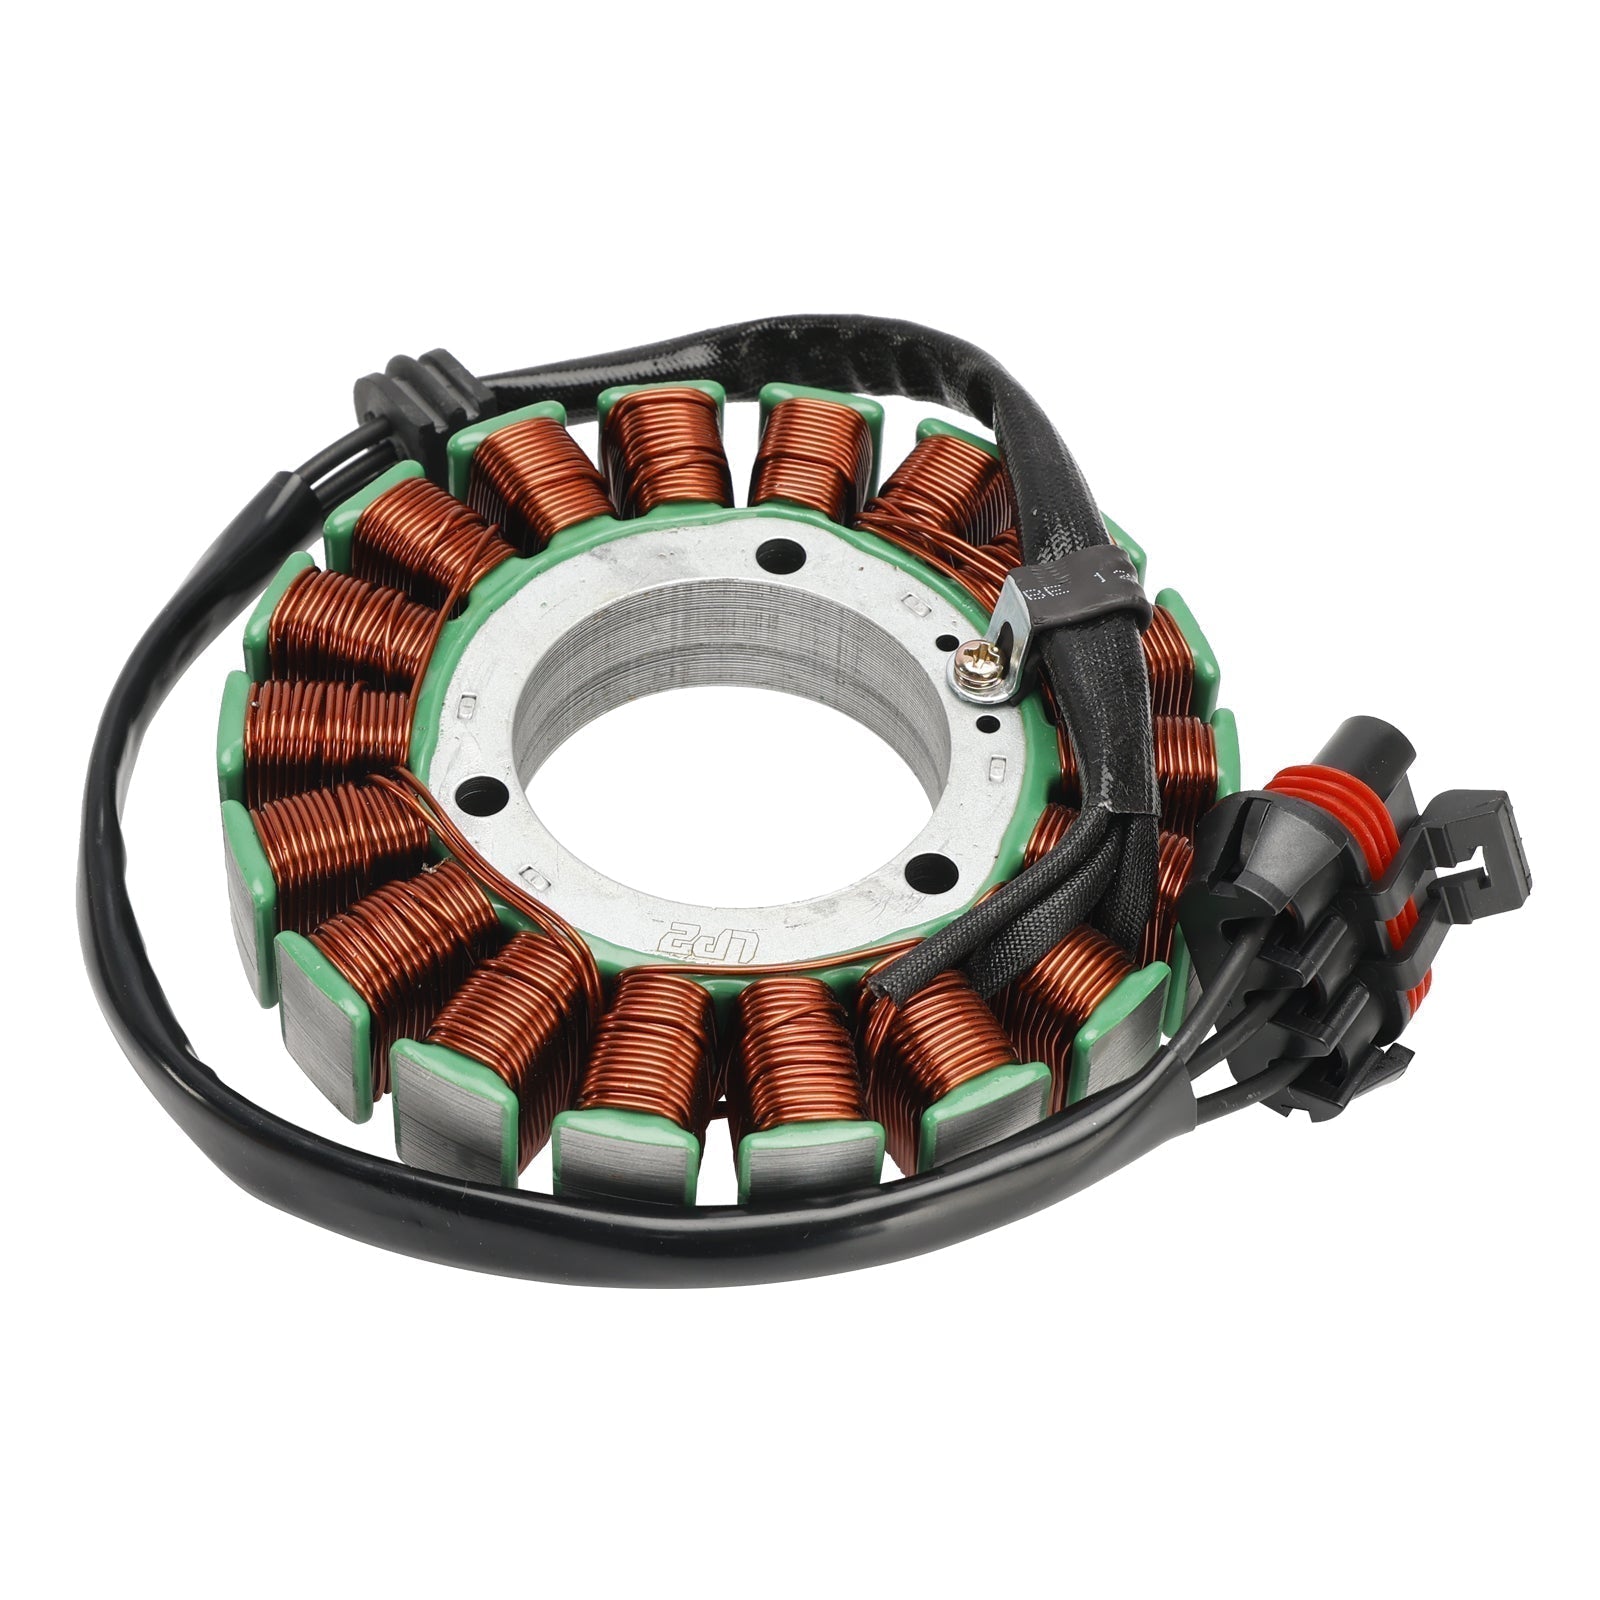 Stator de bobine magnétique Polaris RZR 900 2014 – 2020 + régulateur de tension + joint Assy 4013970